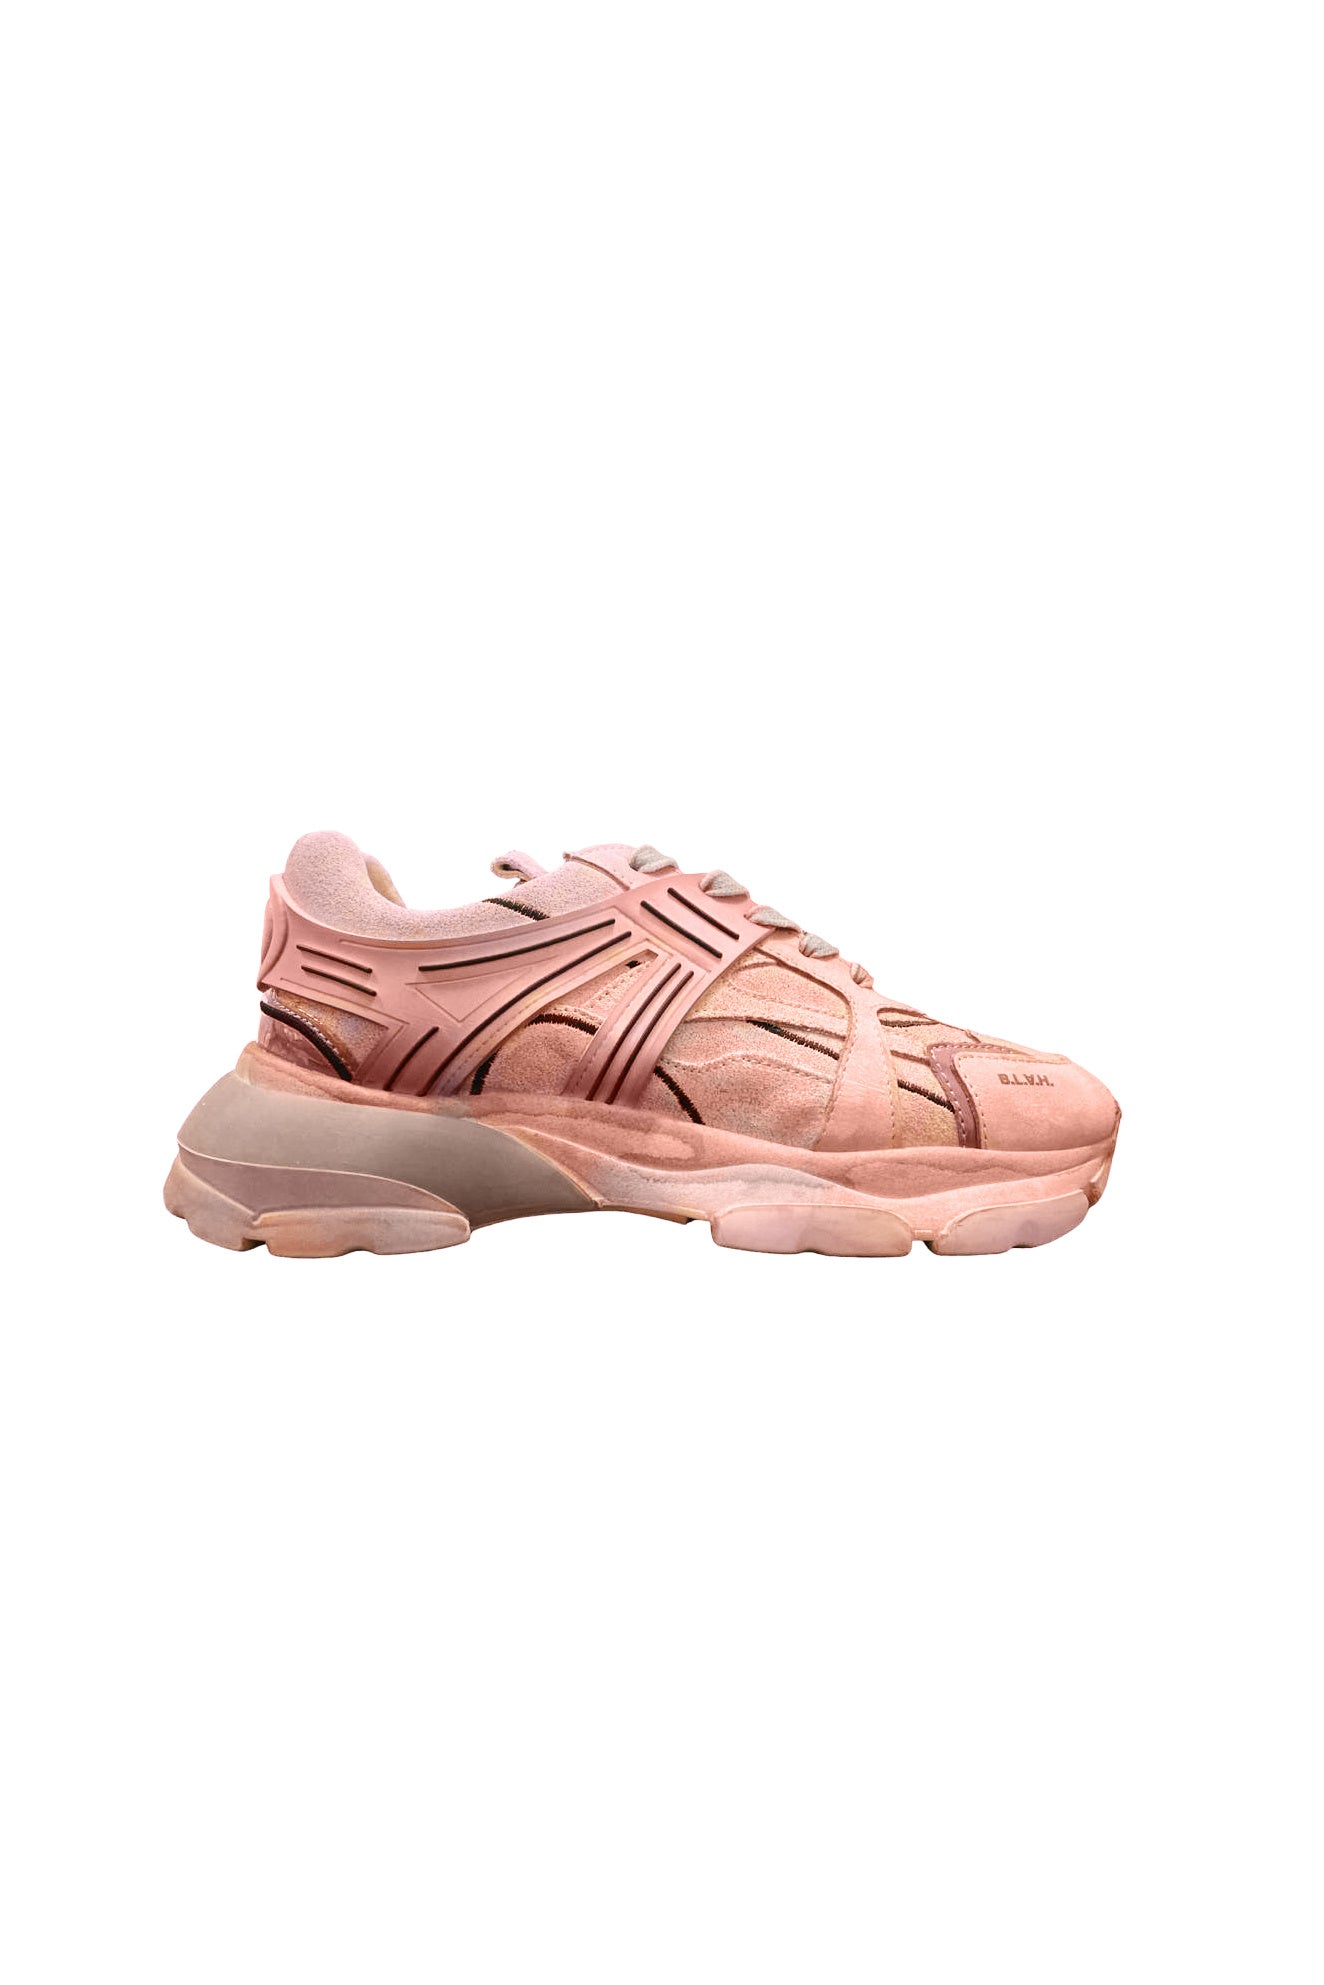 BLAH Muriel Sneaker - Dip Dye / Pink - RUM Amsterdam